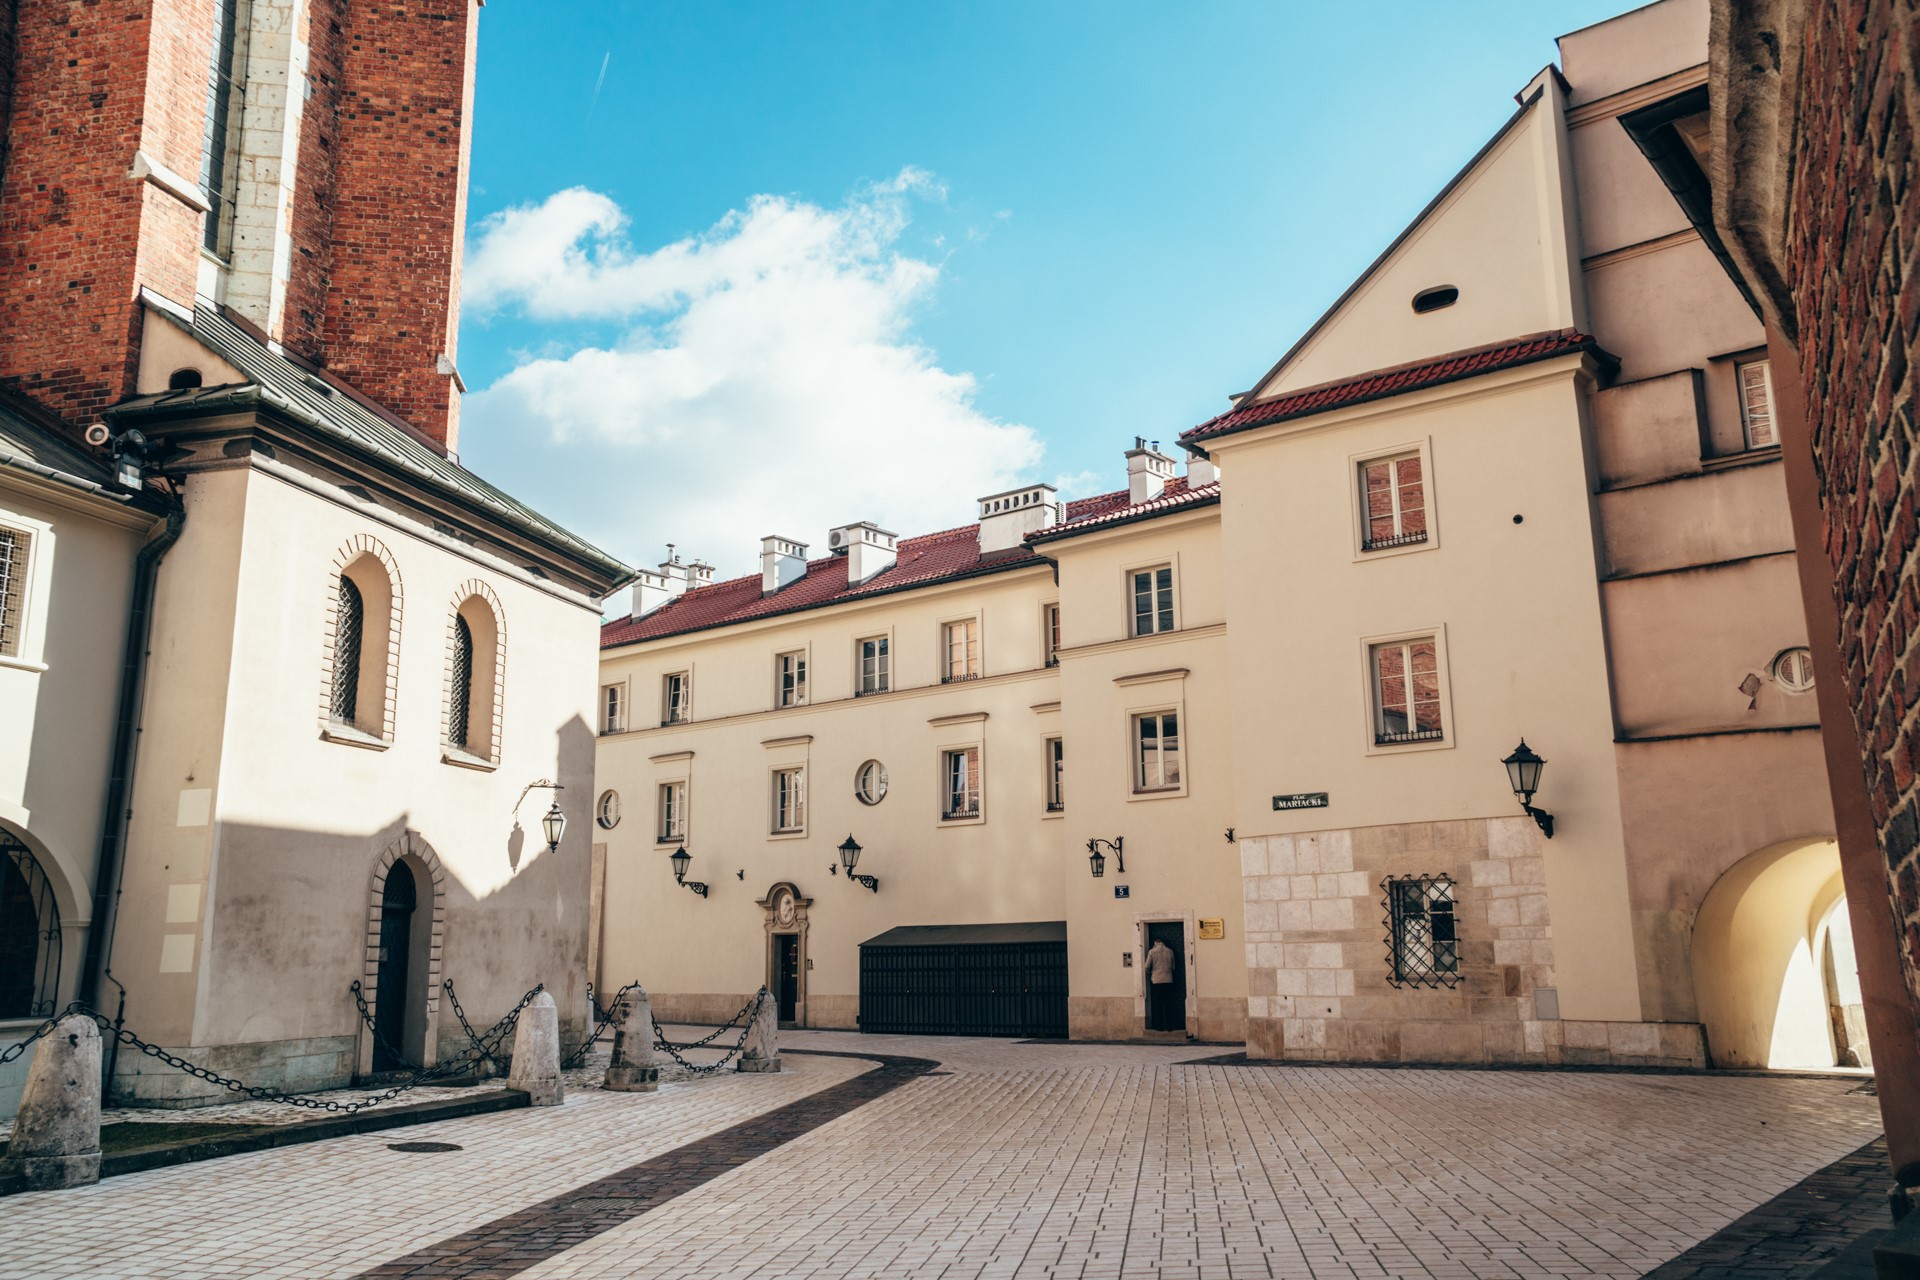 Uliczki zaułki i atrakcje na starym mieście w Krakowie